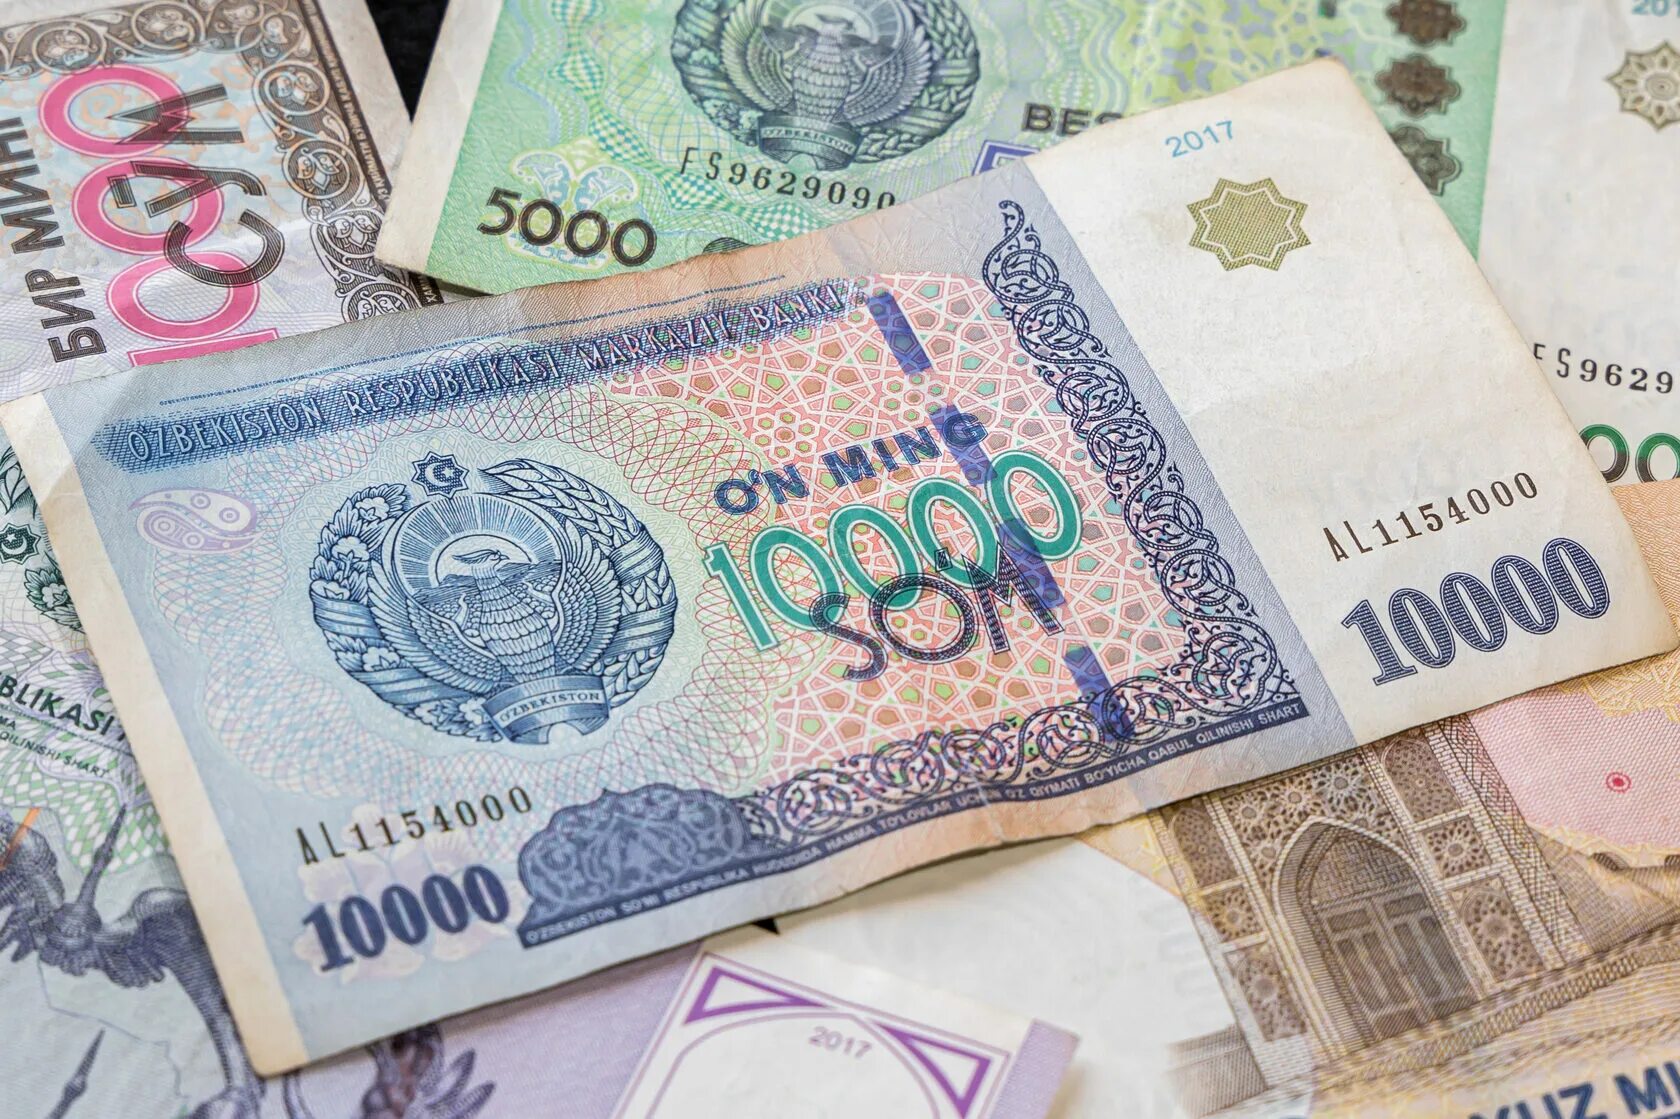 1 млн сум. 2000 Узбекских сум. Узбекистан валюта 100$. Валюта Узбекистана сум. Банкноты Узбекистана.